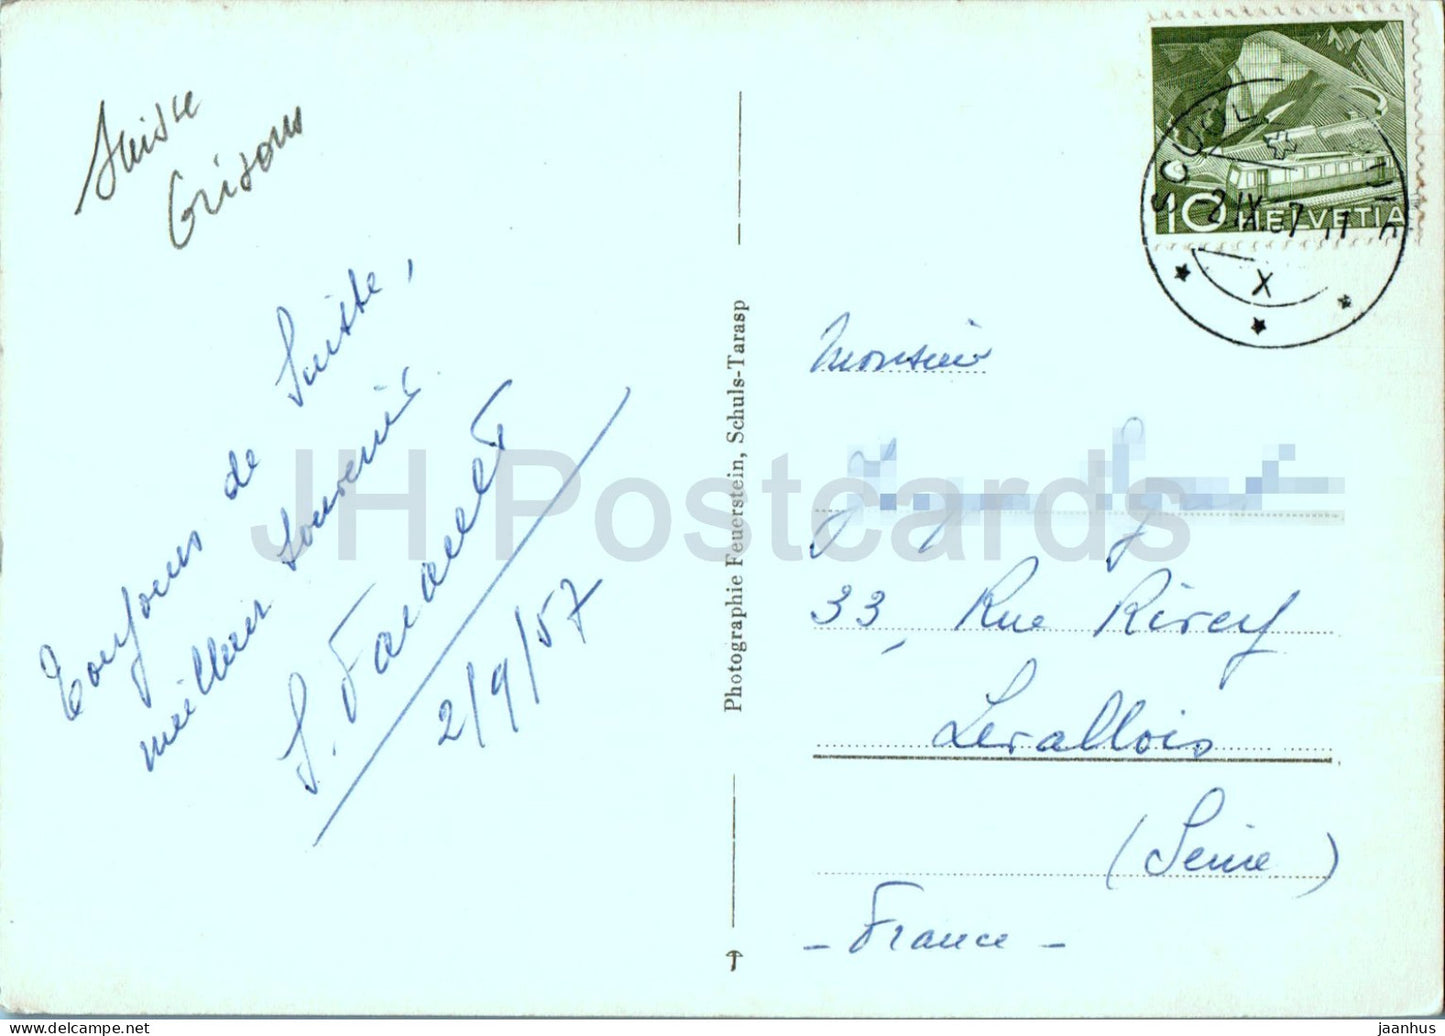 Piz Plavna - Val Minger - Parc Nat - 1069 - carte postale ancienne - 1957 - Suisse - utilisé 